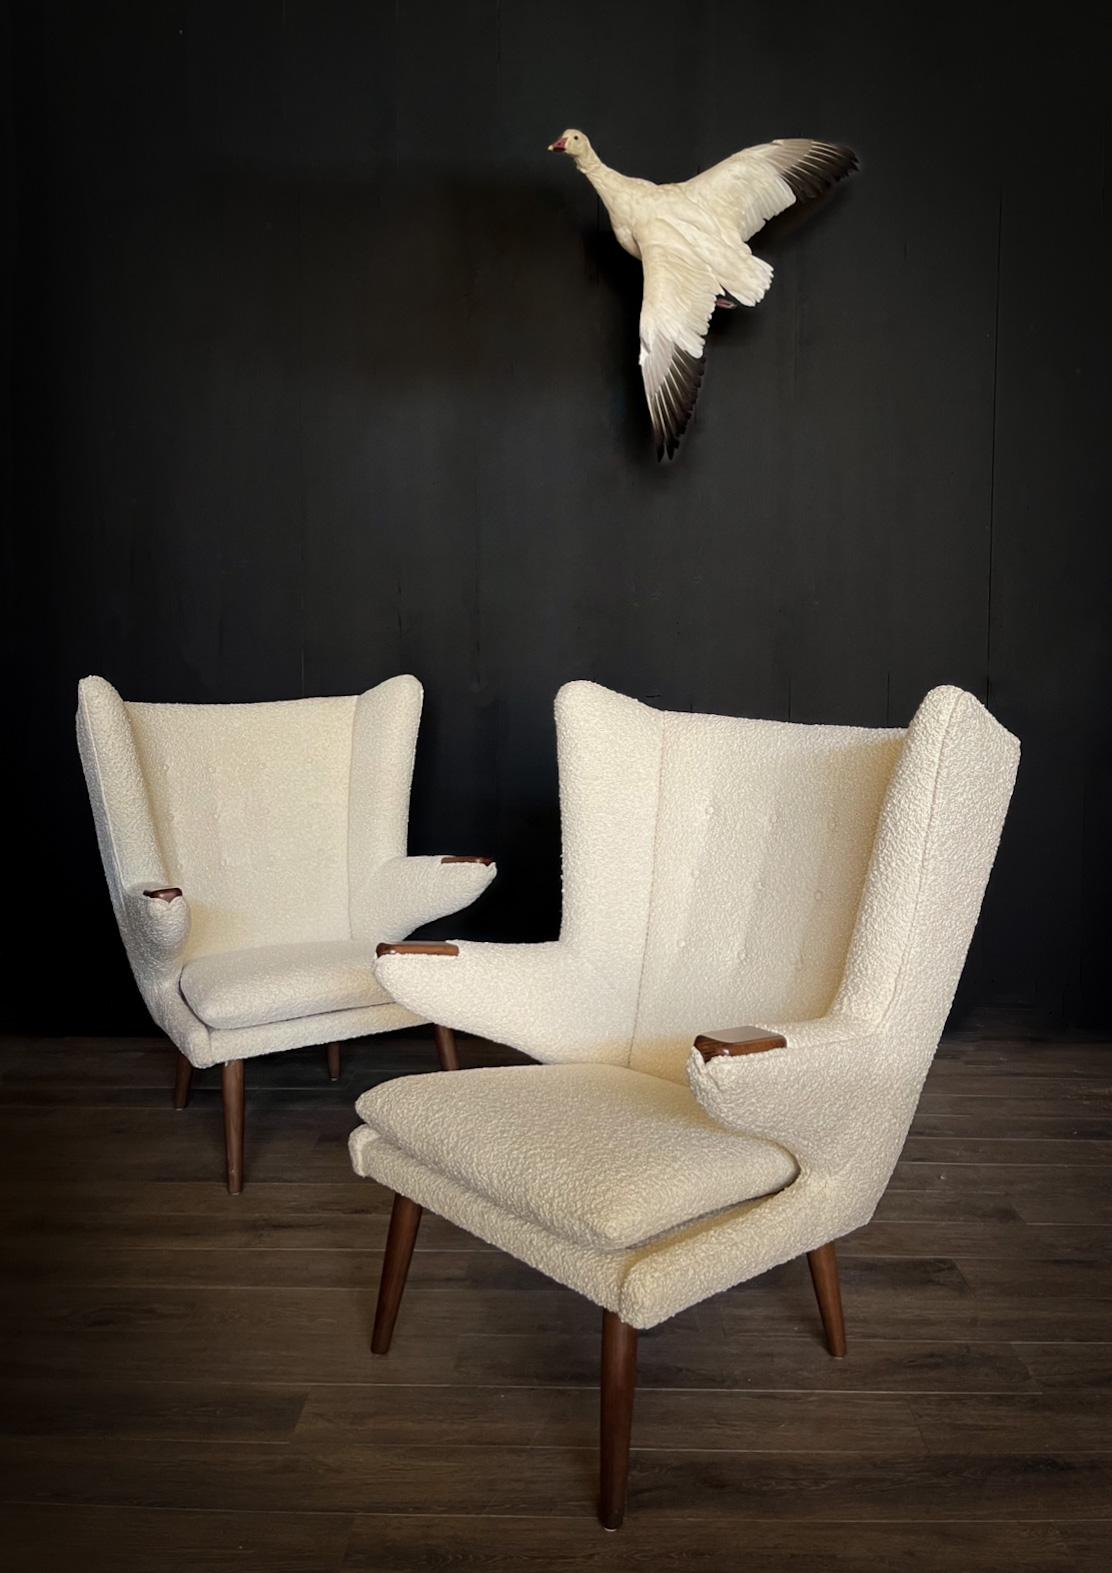 Verschönern Sie Ihren Raum mit diesem außergewöhnlichen Angebot: ein fesselndes Paar Stühle im Vintage Papa-Bär-Stil, die an das zeitlose Modell AP 19 von Hans J. Wegner erinnern, begleitet von einer wunderbar passenden Ottomane. Diese Stühle sind